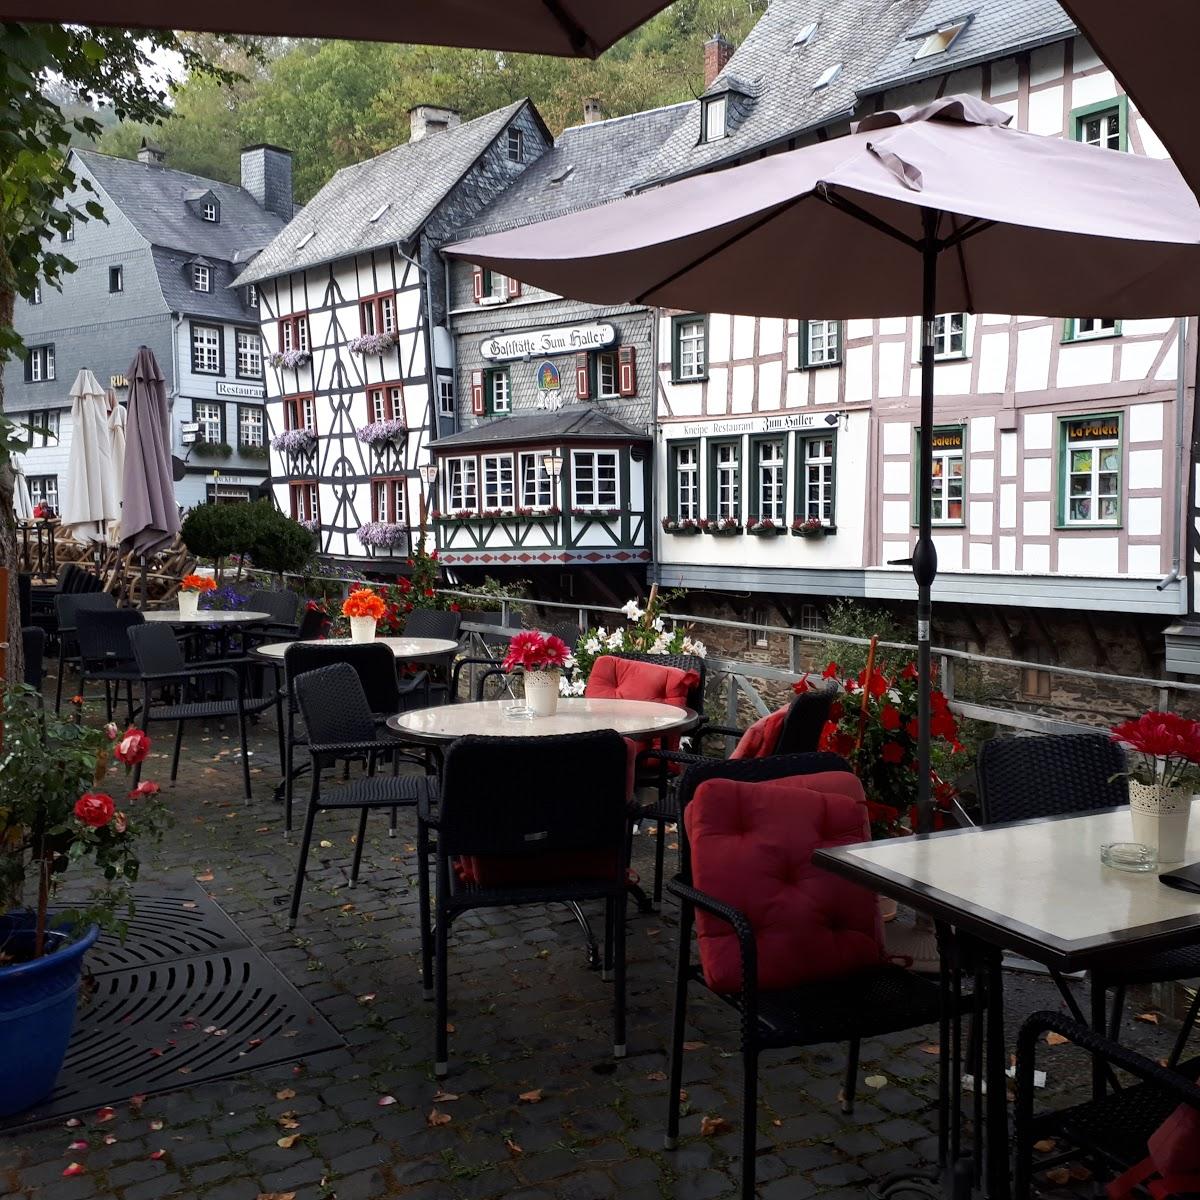 Restaurant "Alter Markt" in Monschau